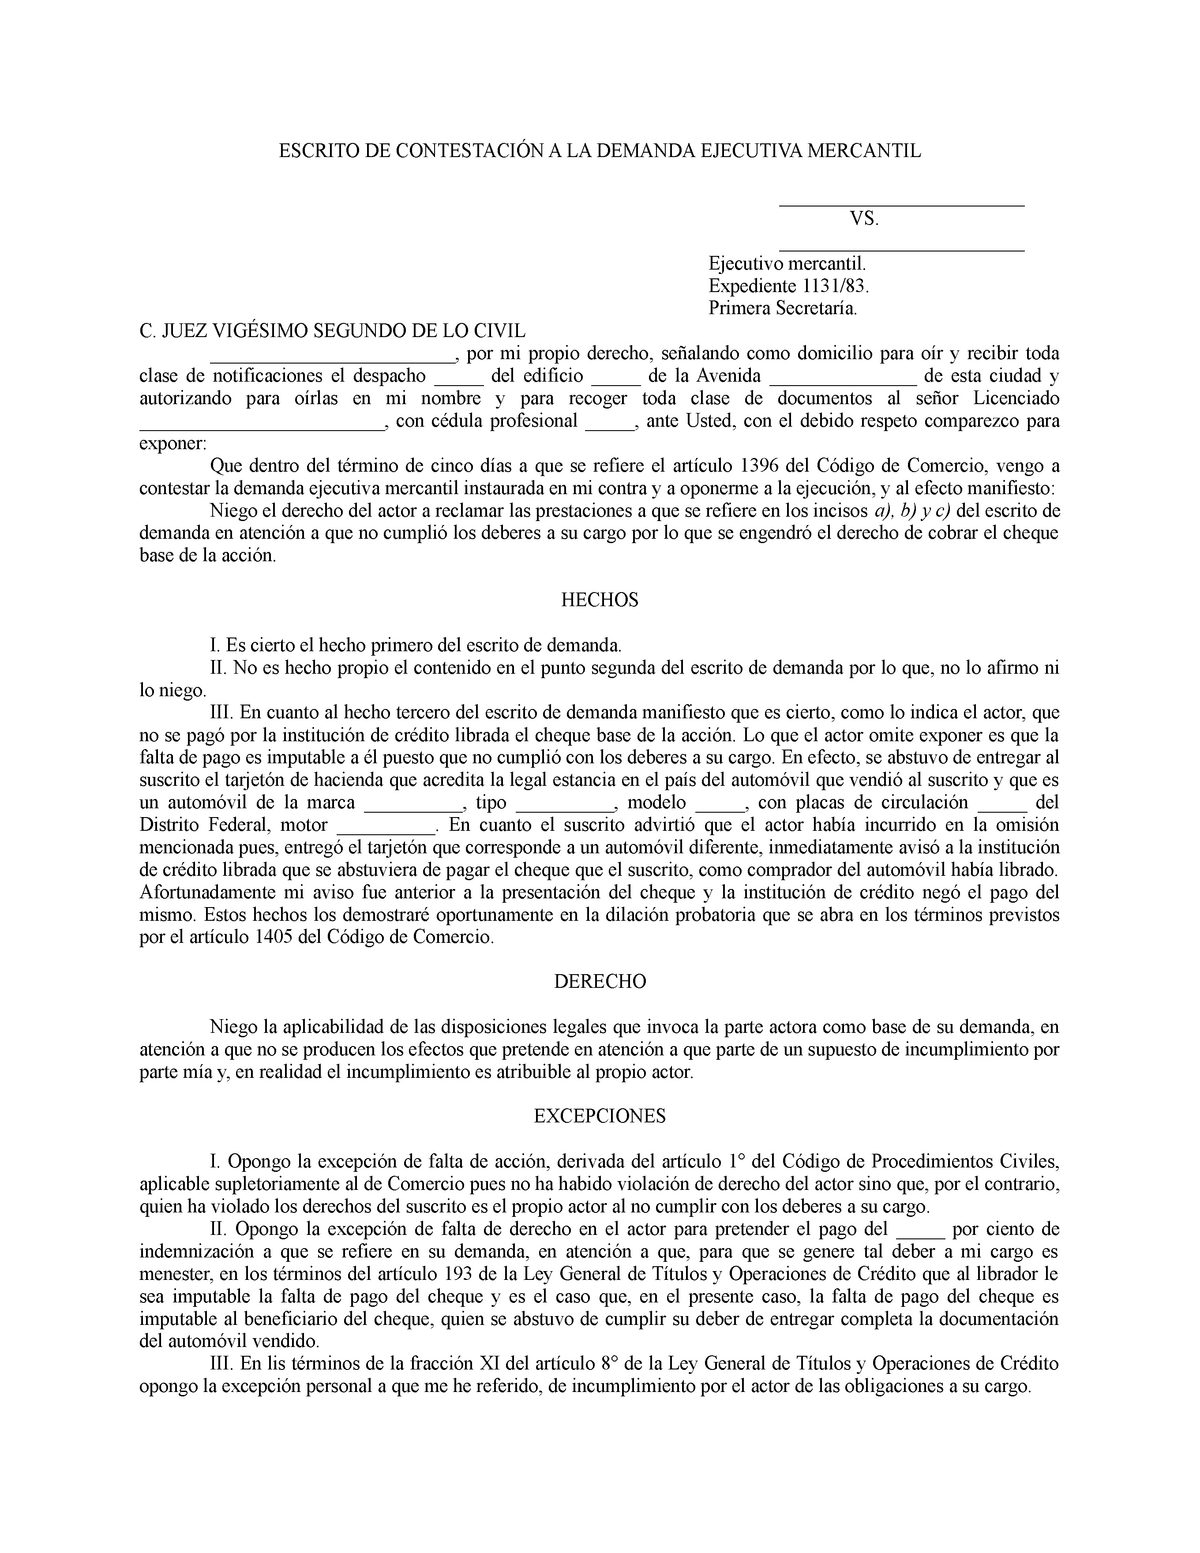 Contestación a demanda de juicio ejecuivo mercantil - ESCRITO DE  CONTESTACIÓN A LA DEMANDA EJECUTIVA - Studocu